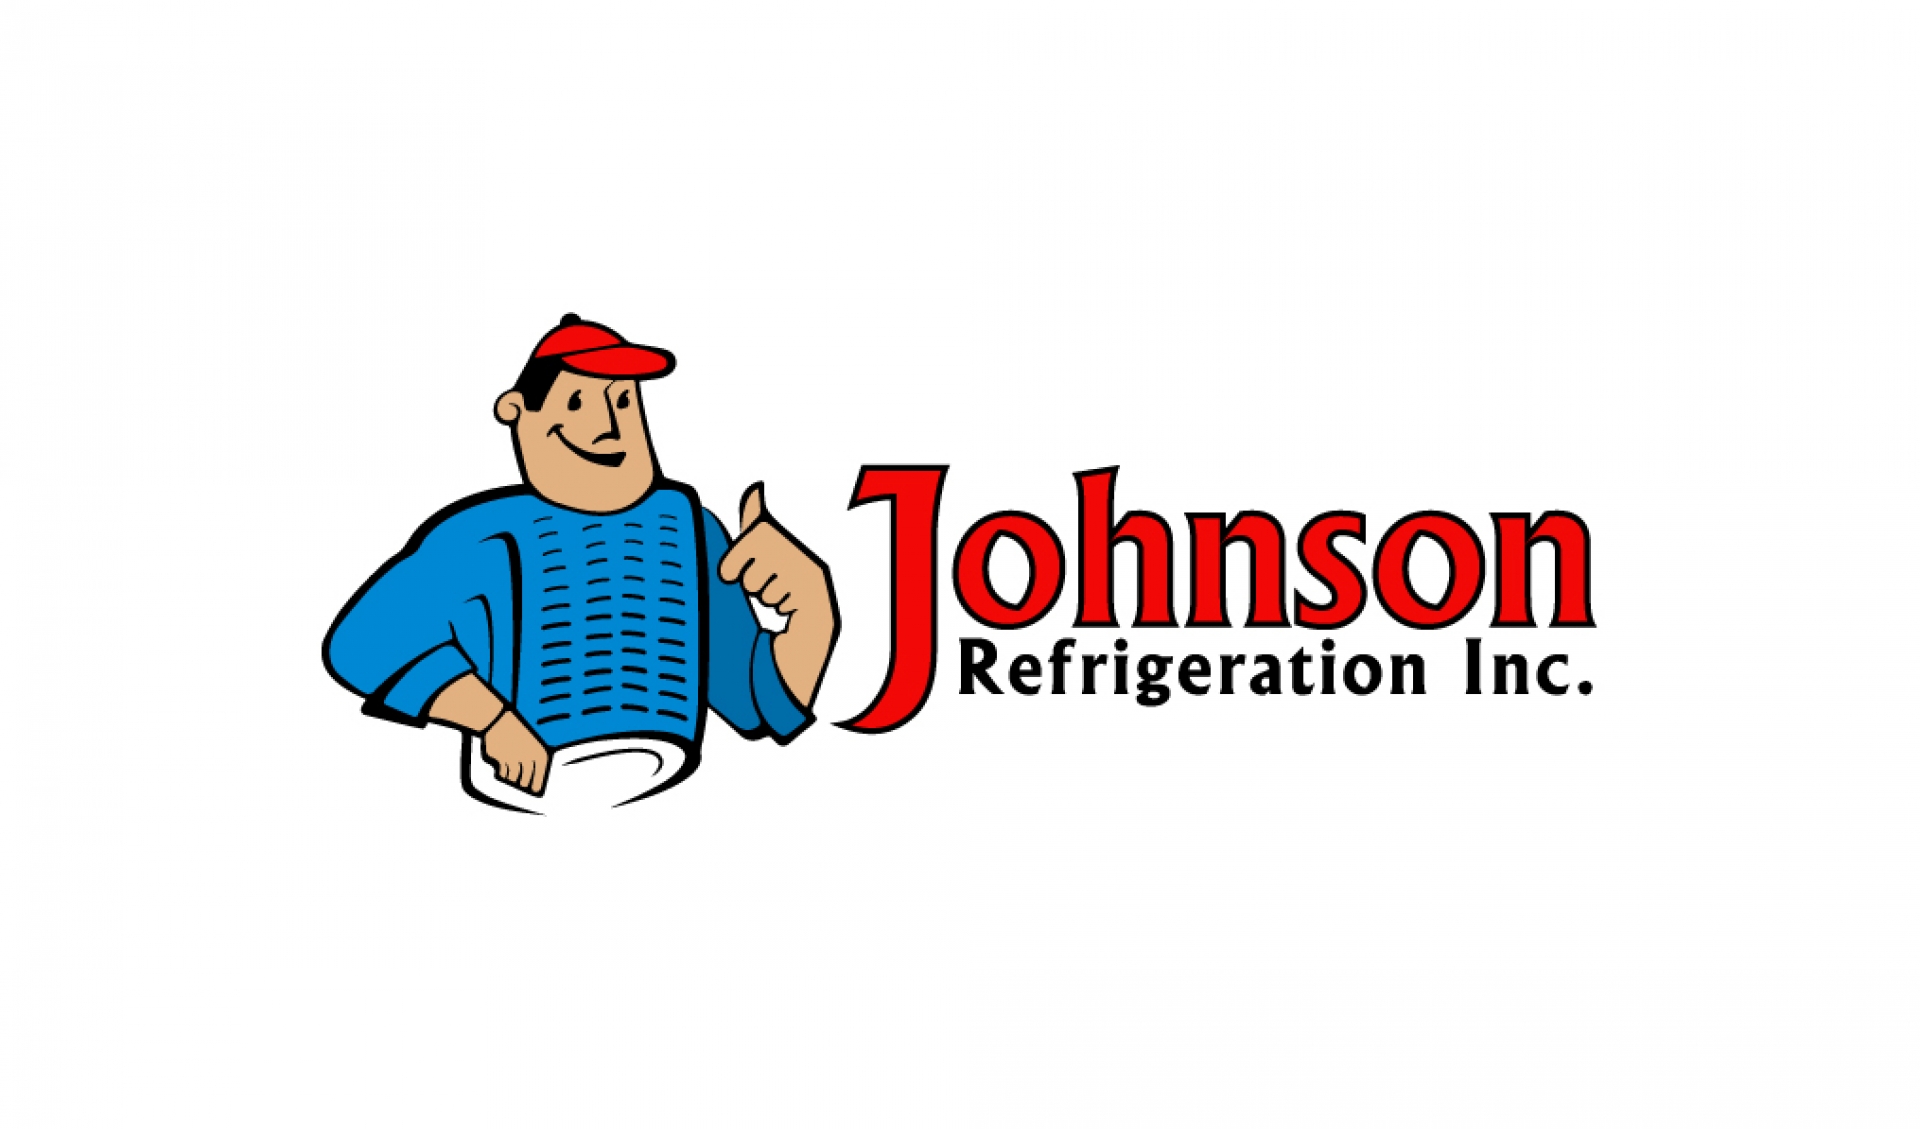 Johnson Refrigeration Inc company logo